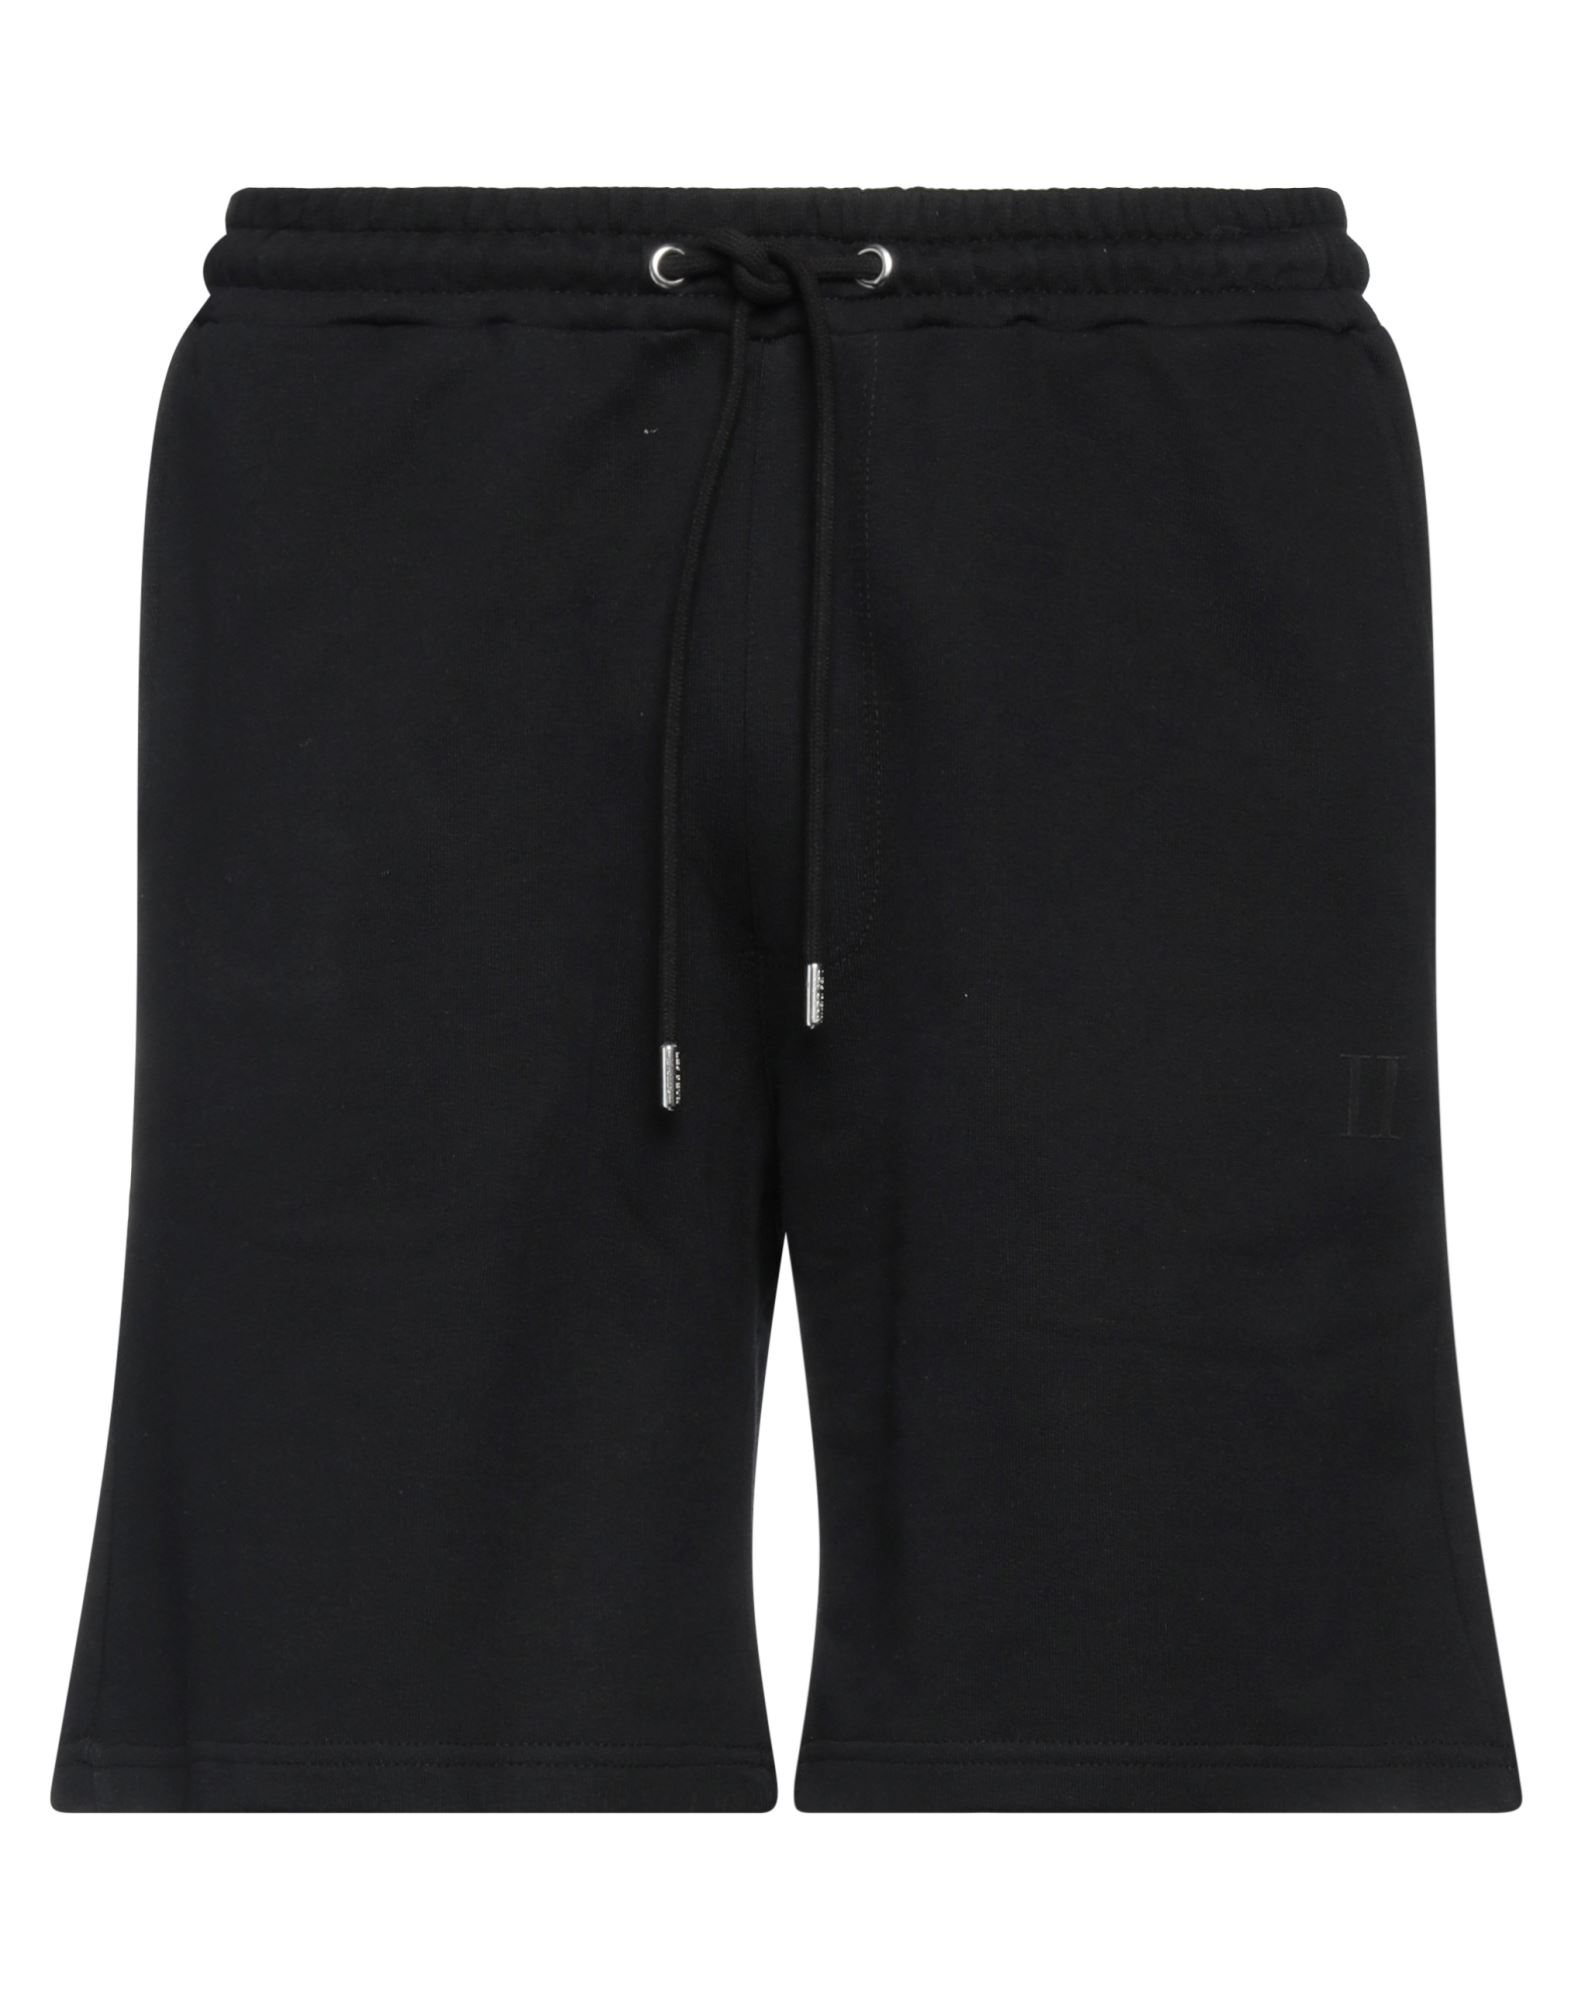 Les Deux Man Shorts & Bermuda Shorts Black Size Xl Cotton